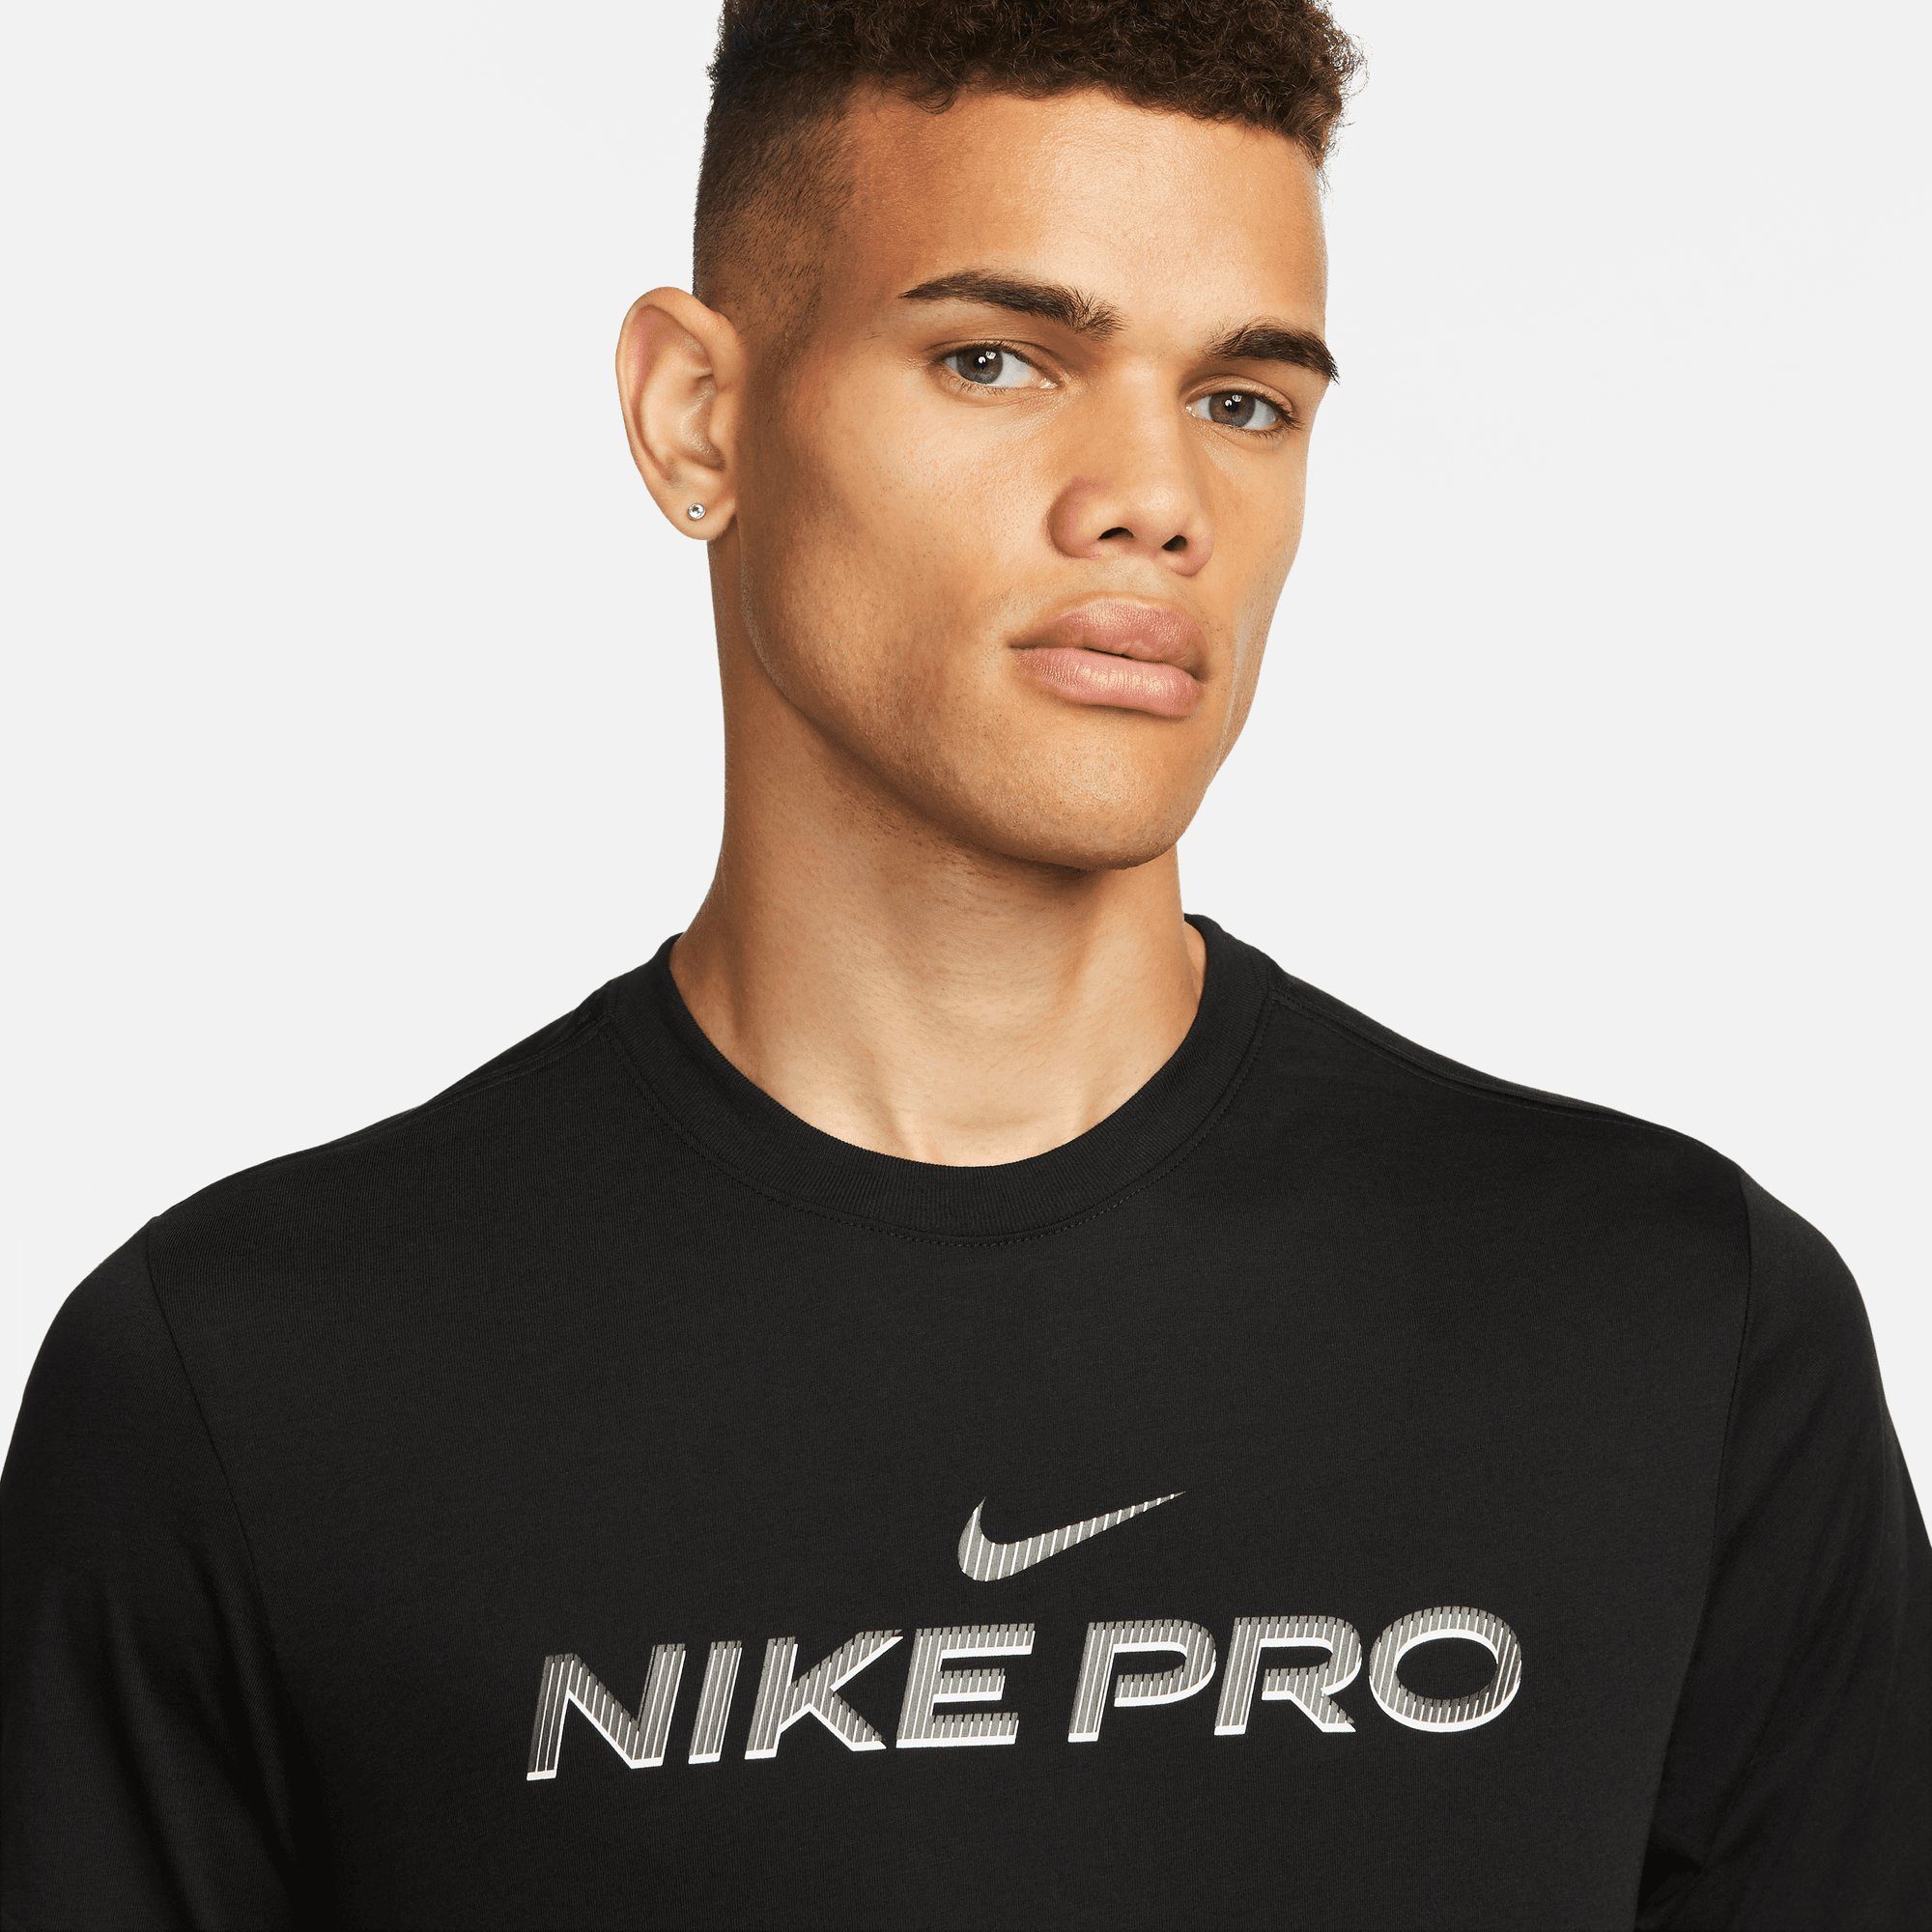 MEN'S Nike T-SHIRT BLACK DRI-FIT Trainingsshirt FITNESS